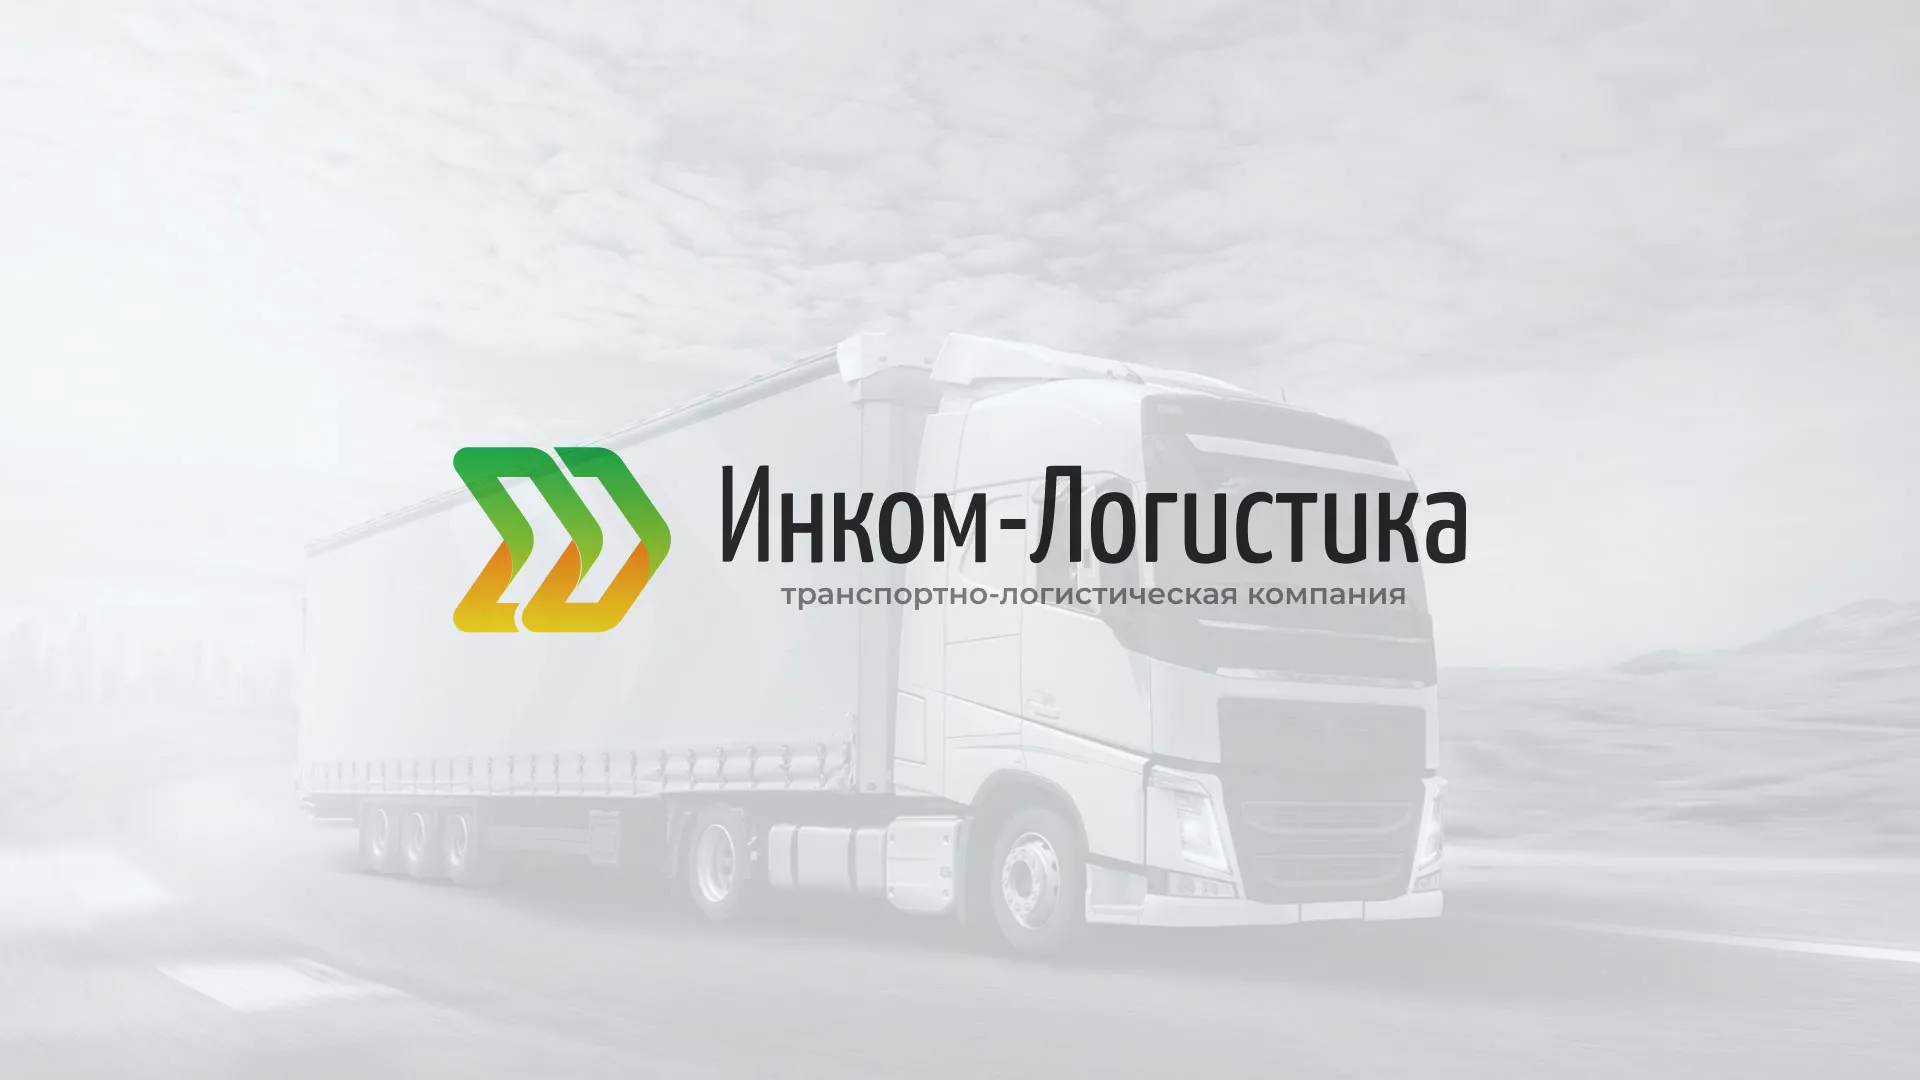 Разработка логотипа и сайта компании «Инком-Логистика» в Курильске